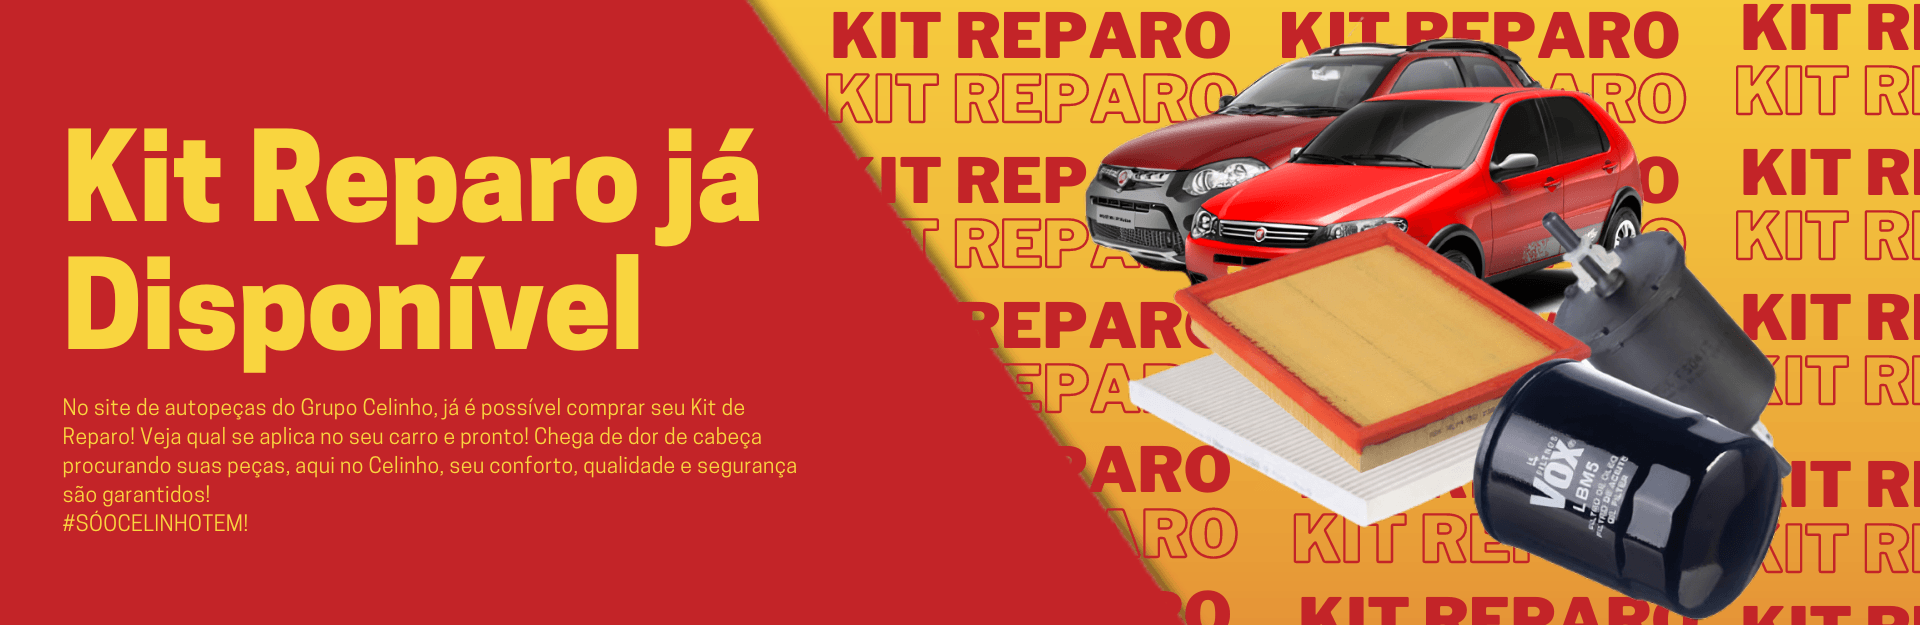 Kit de Reparo, incluso Filtro de Óleo, Filtro de Combustível, Filtro de Ar, Filtro de Ar Condicionado, VOX Filters Original